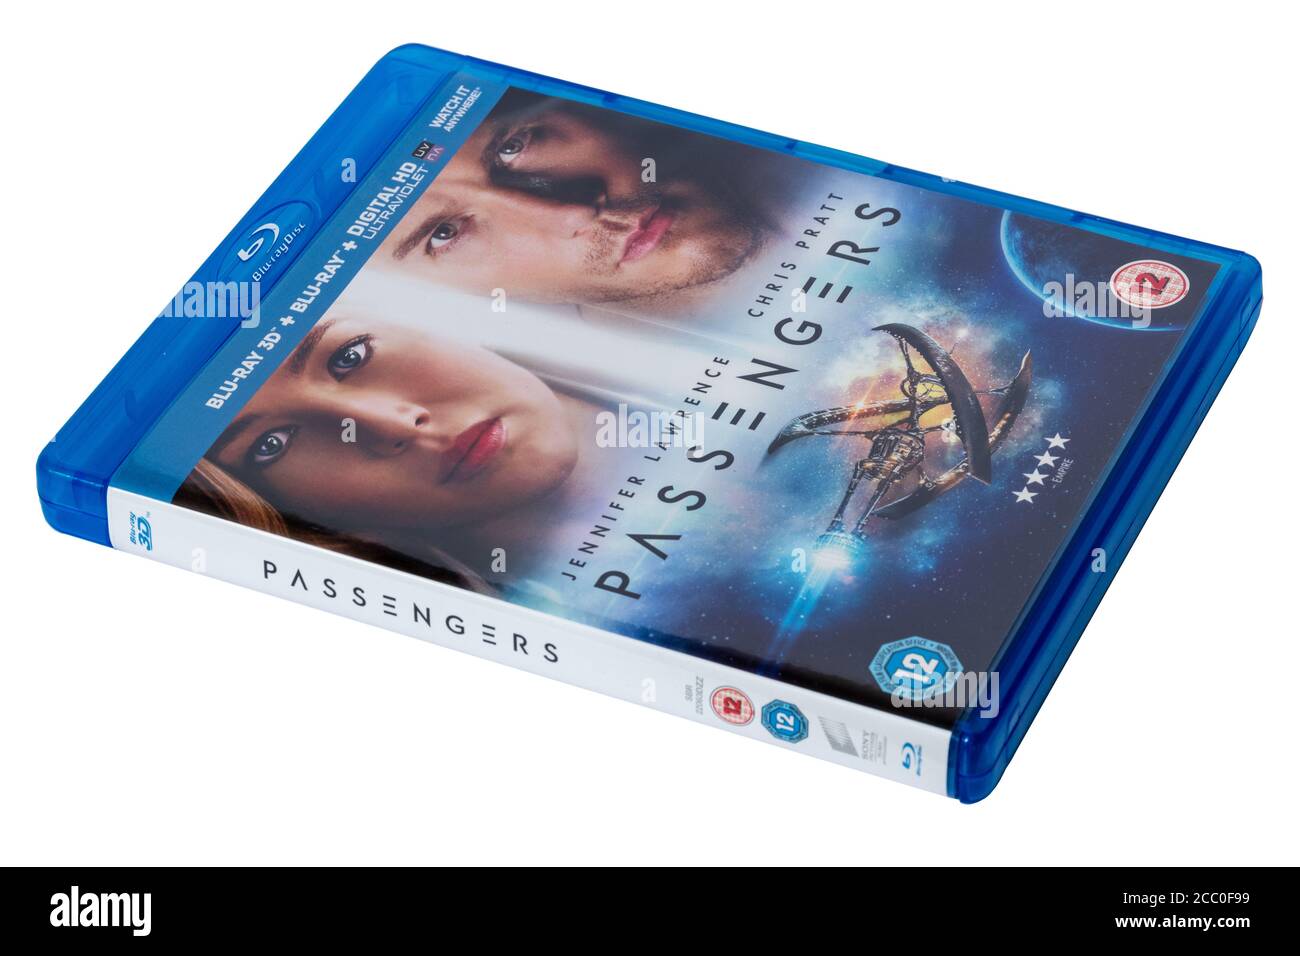 Passengers, un film de romance de science-fiction américain de 2016, sur disque Blu-ray Banque D'Images